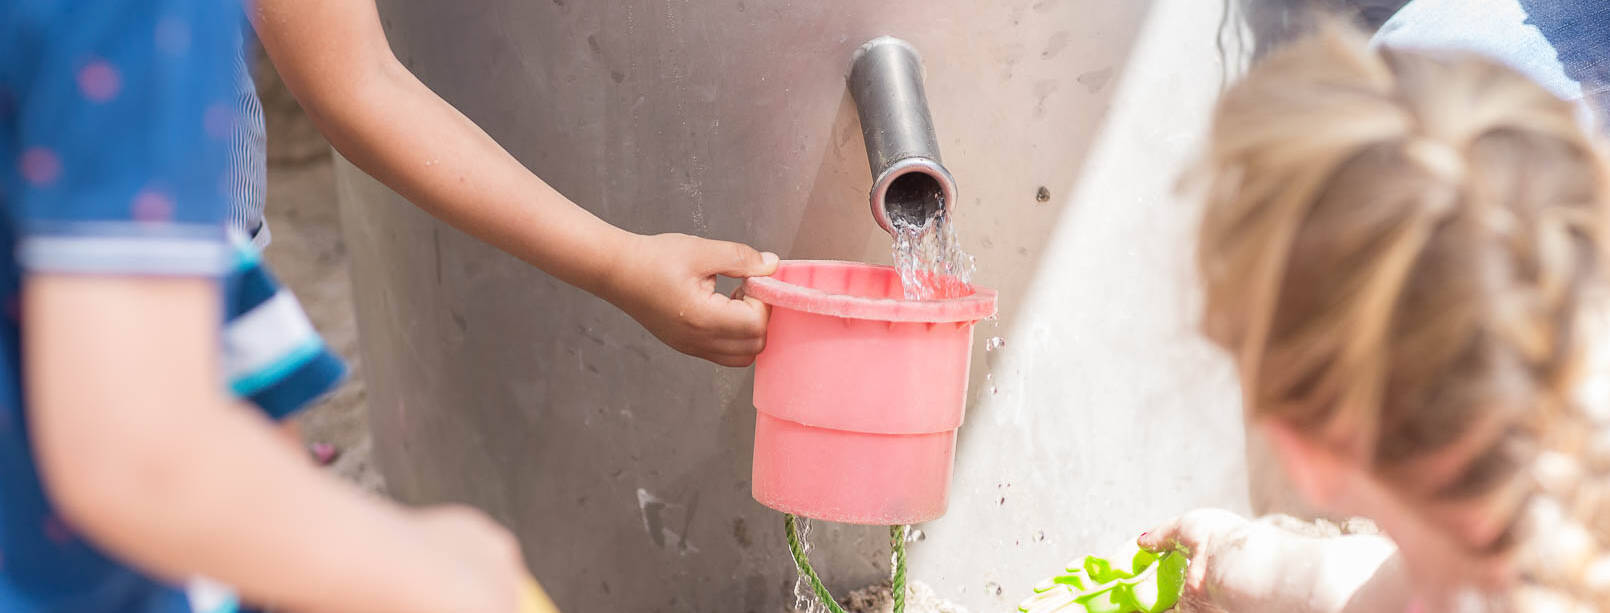 Kinder entnehmen Gartenwasser